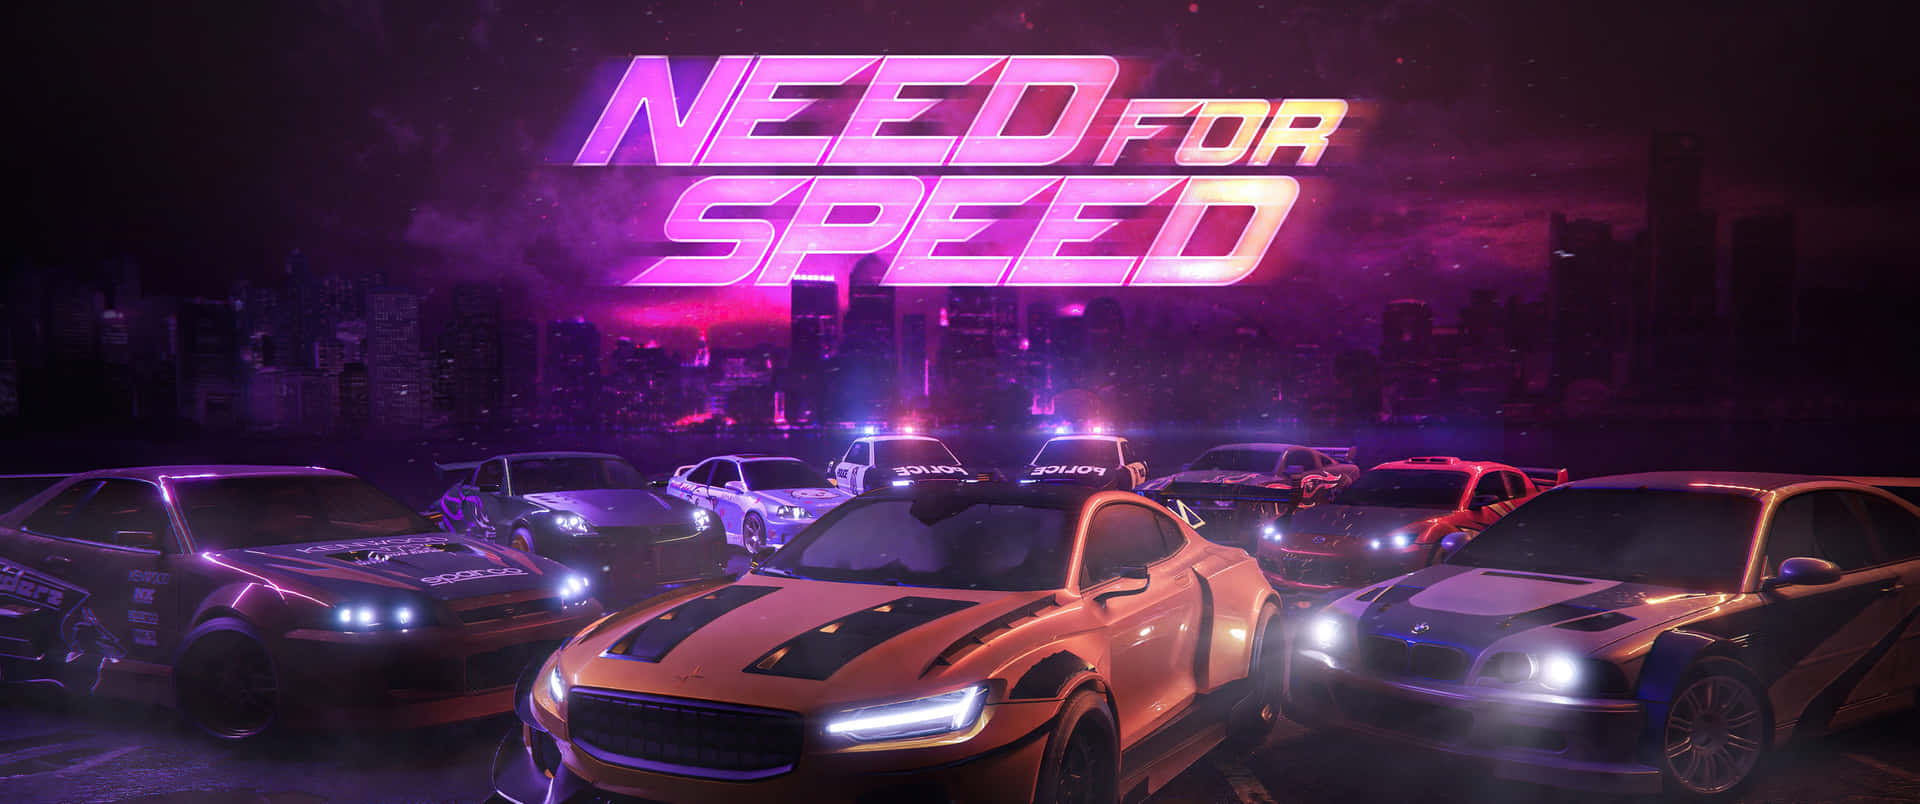 Needfor Speed Baggrund Med Pink Logo